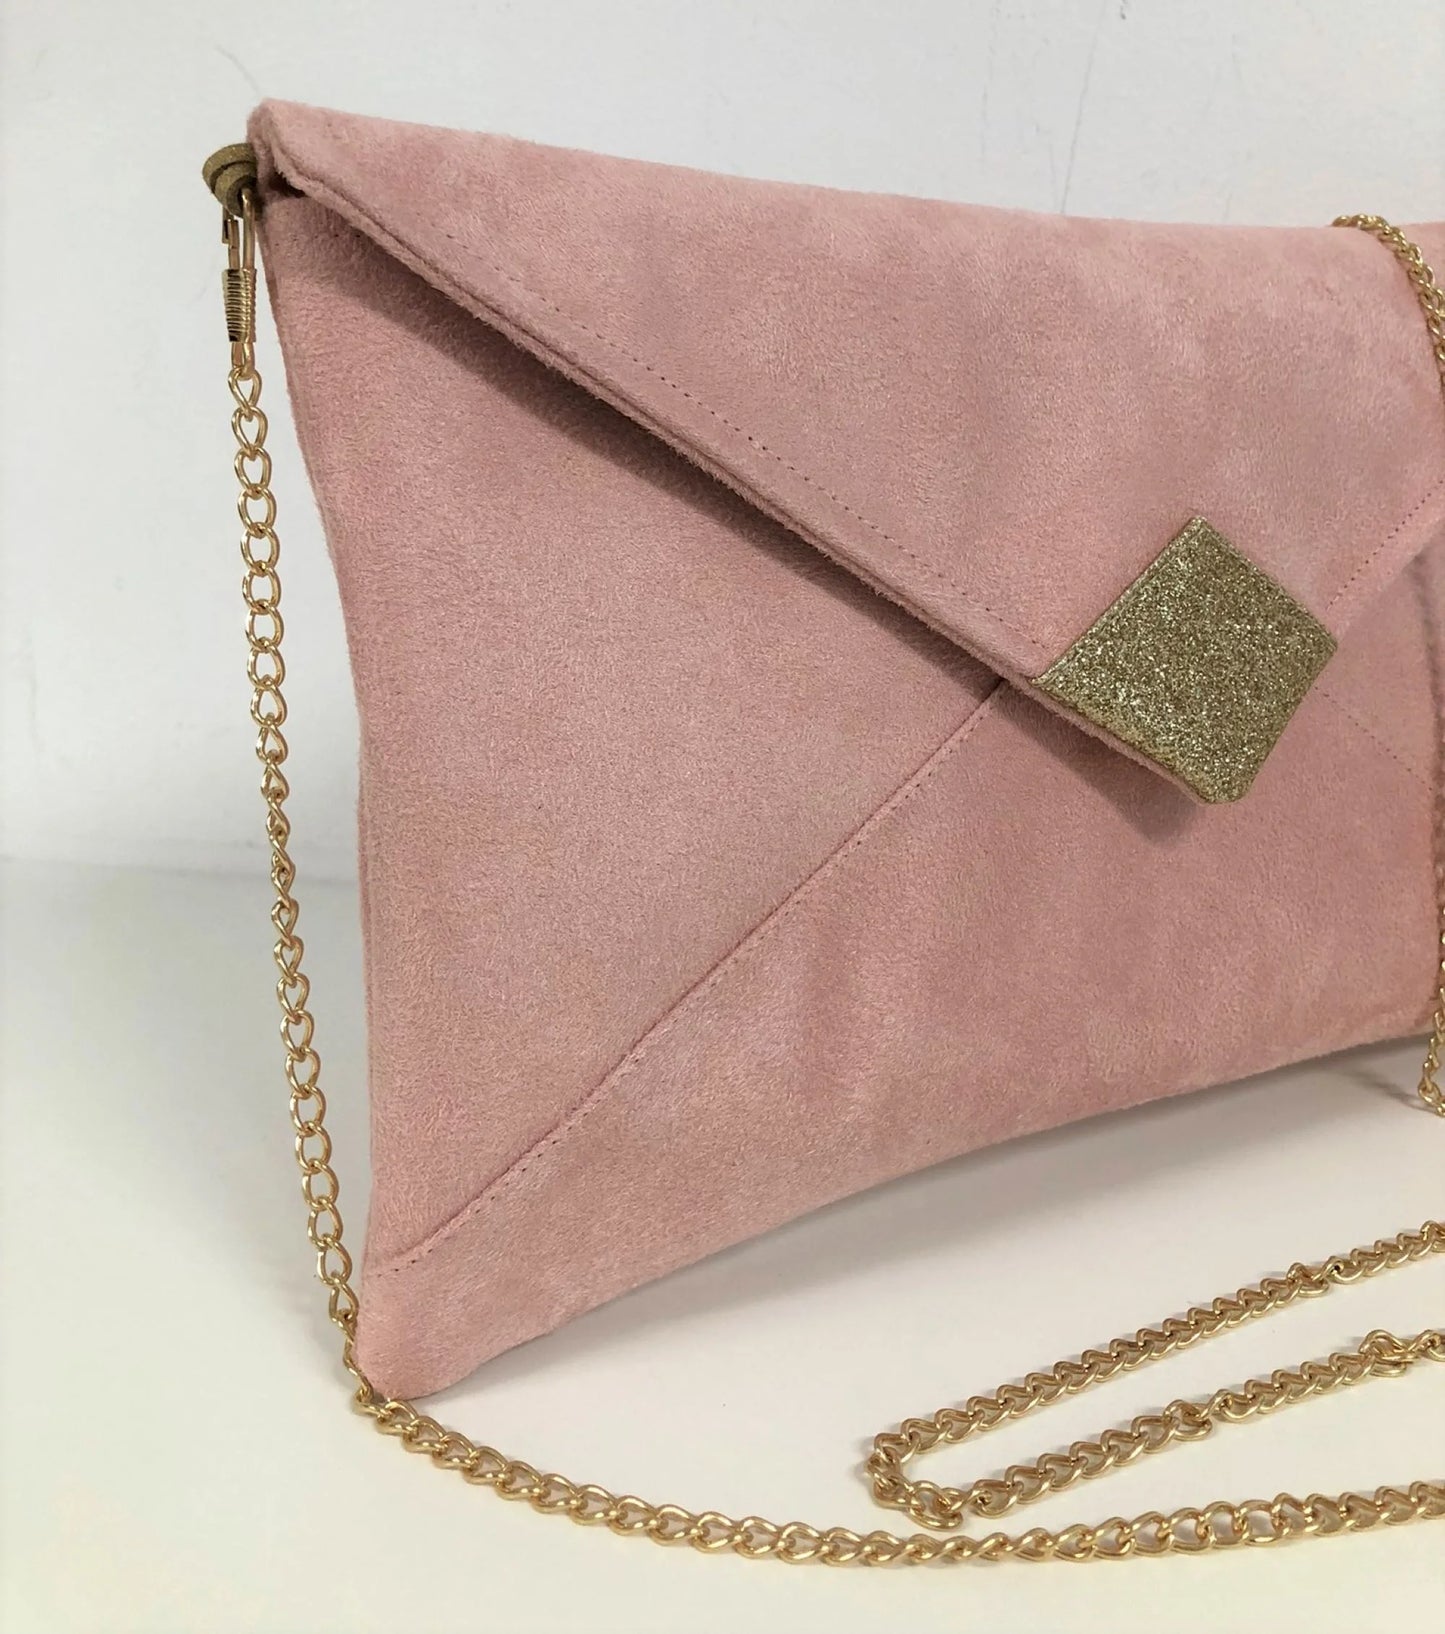 Le sac pochette Isa rose poudré à paillettes dorées, avec sa chainette dorée amovible.